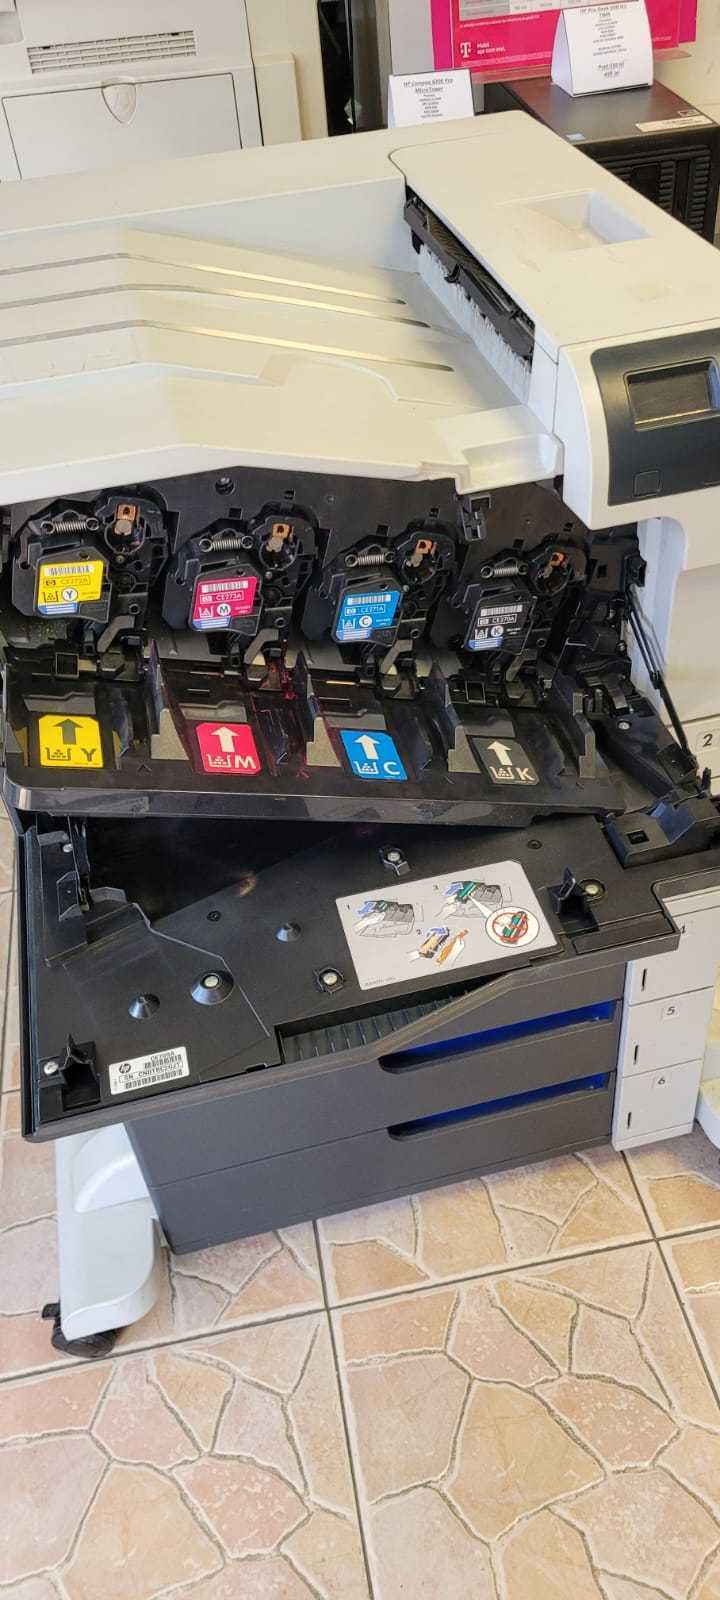 Imprimanta HP Color LaserJet CP5525 defecta